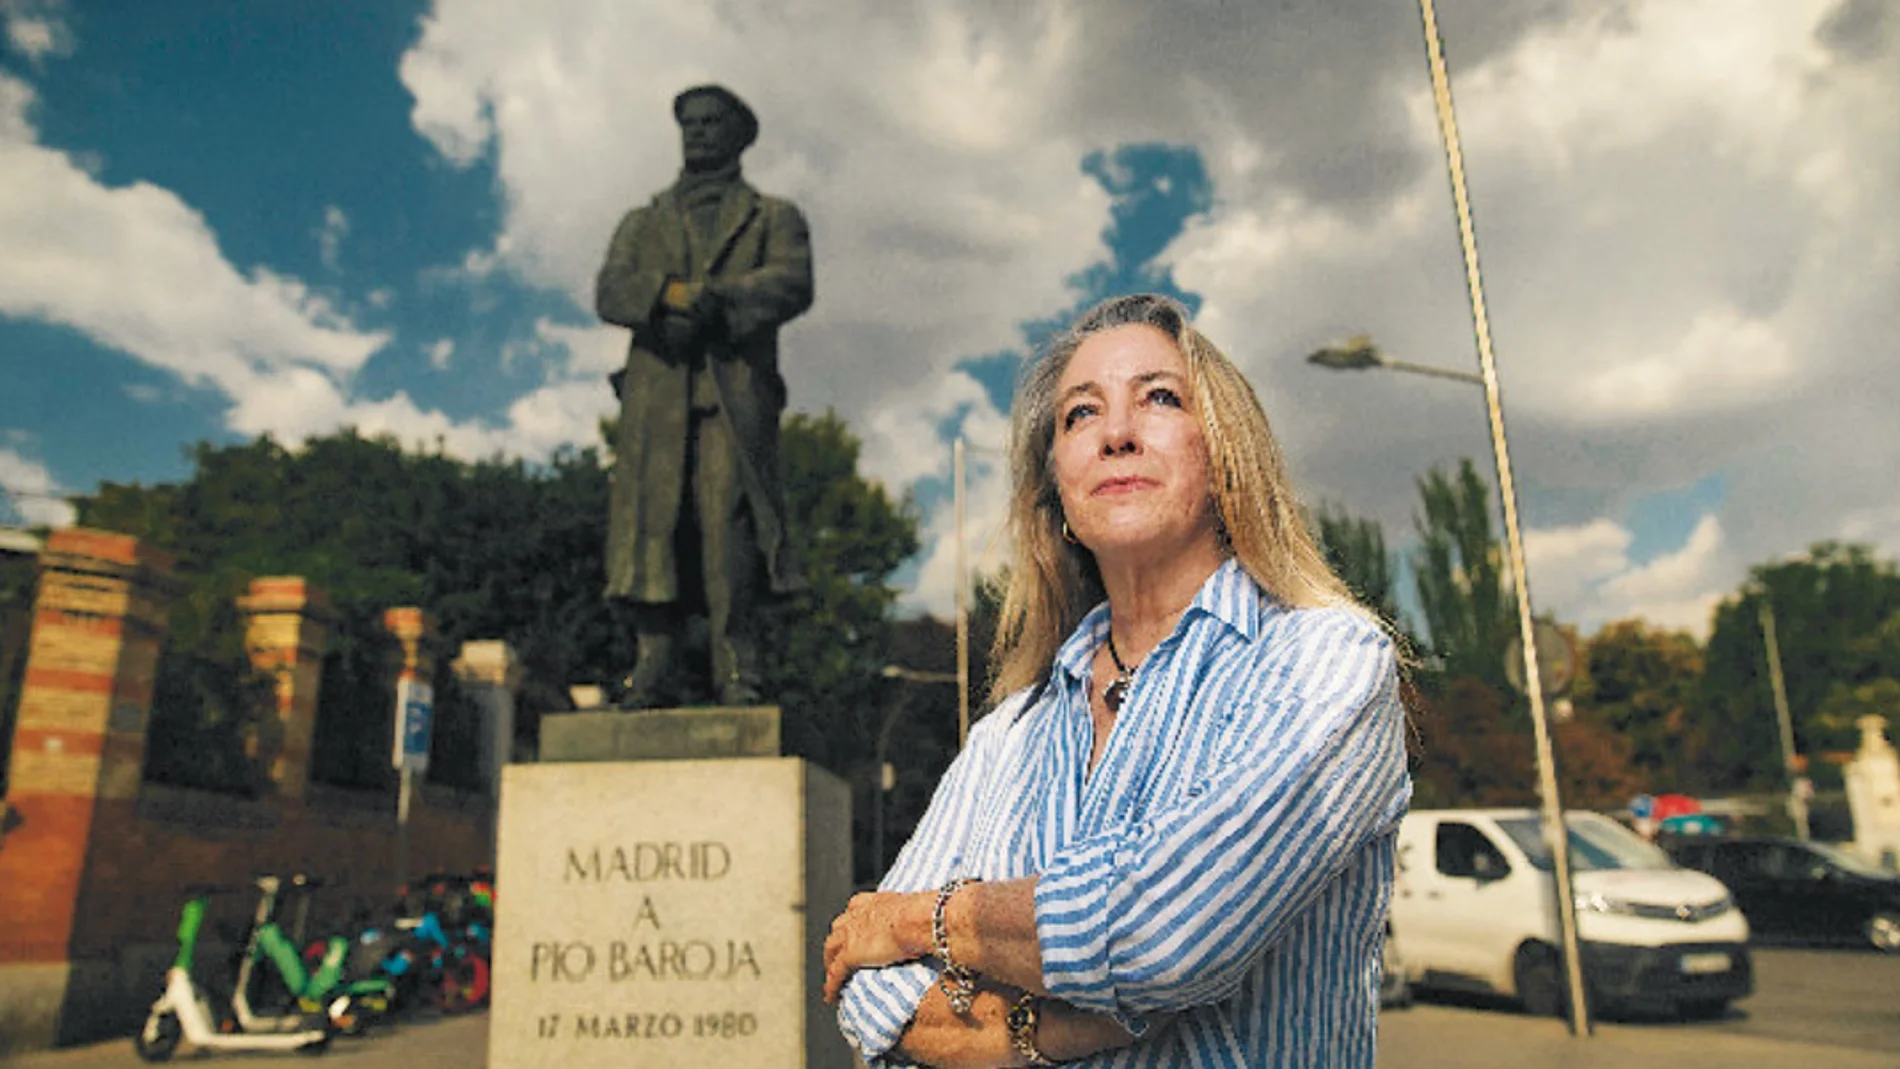 Carmen Caro, sobrina nieta del autor, junto a la estatua de Pío Baroja levantada en la cuesta de Moyano, uno de los lugares preferidos del autor de «El árbol de la ciencia»